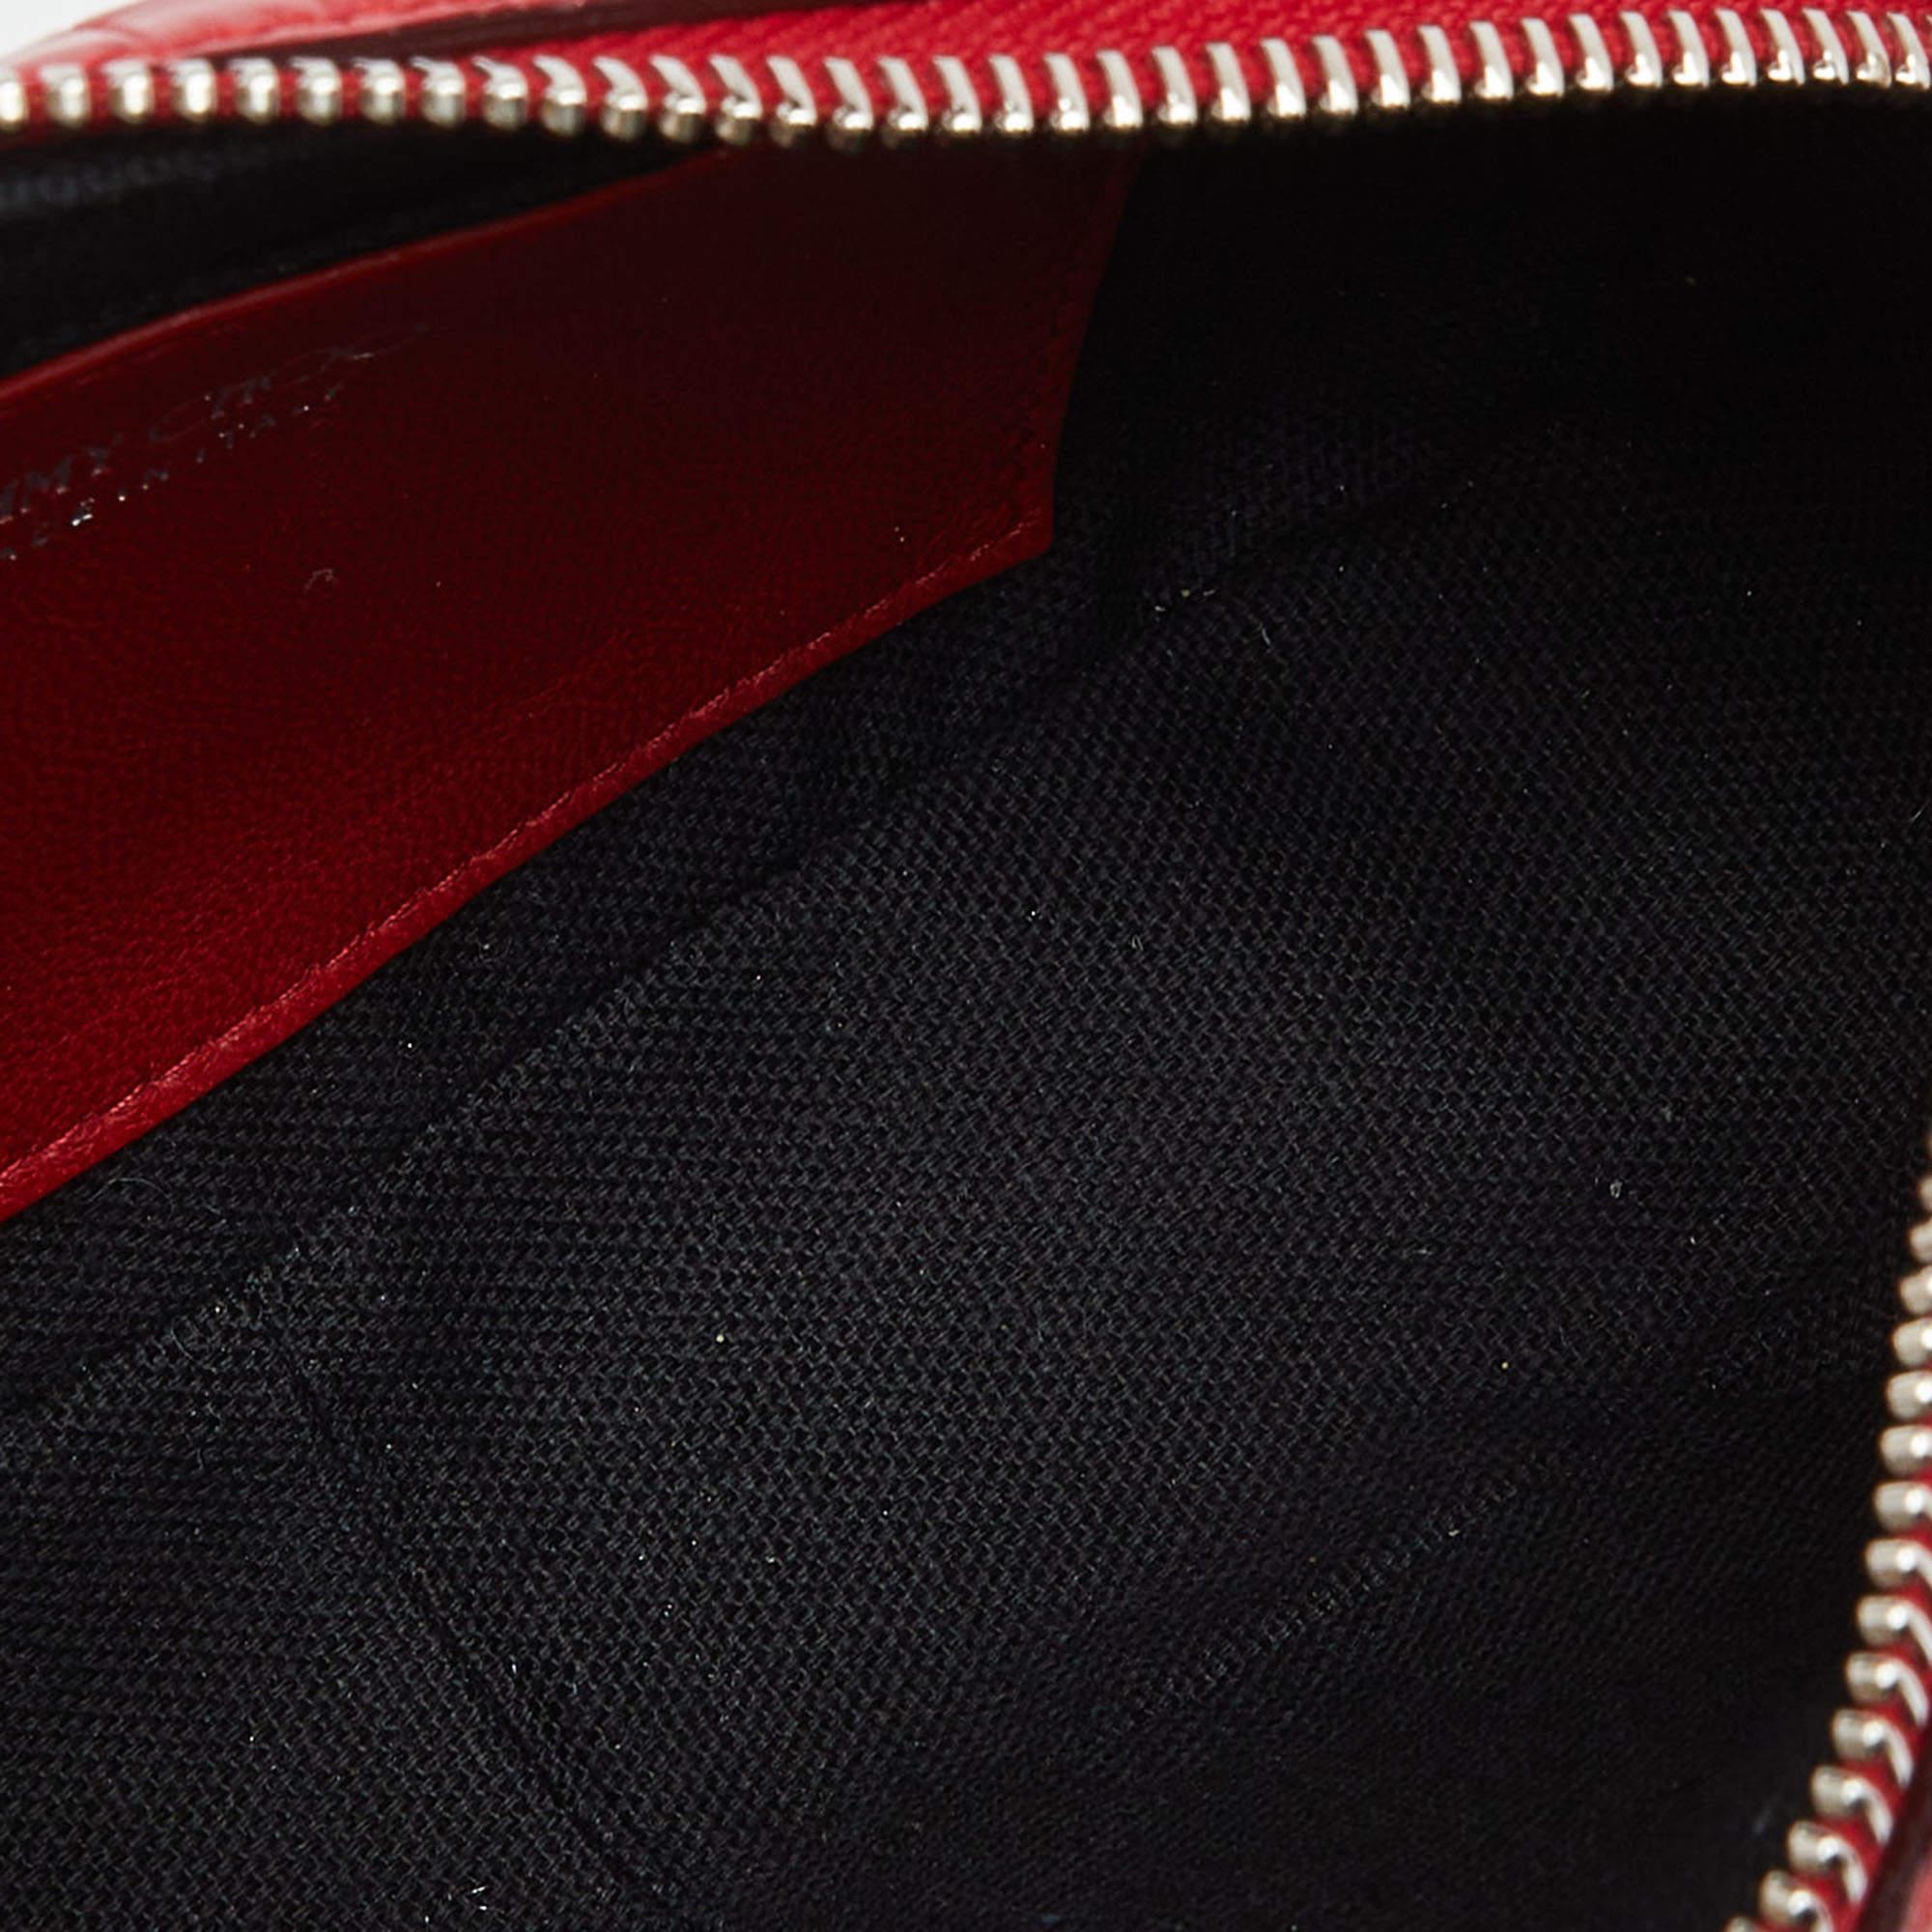 Jimmy Choo Red Croc Embossed Leather Varenne Camera Bag 1